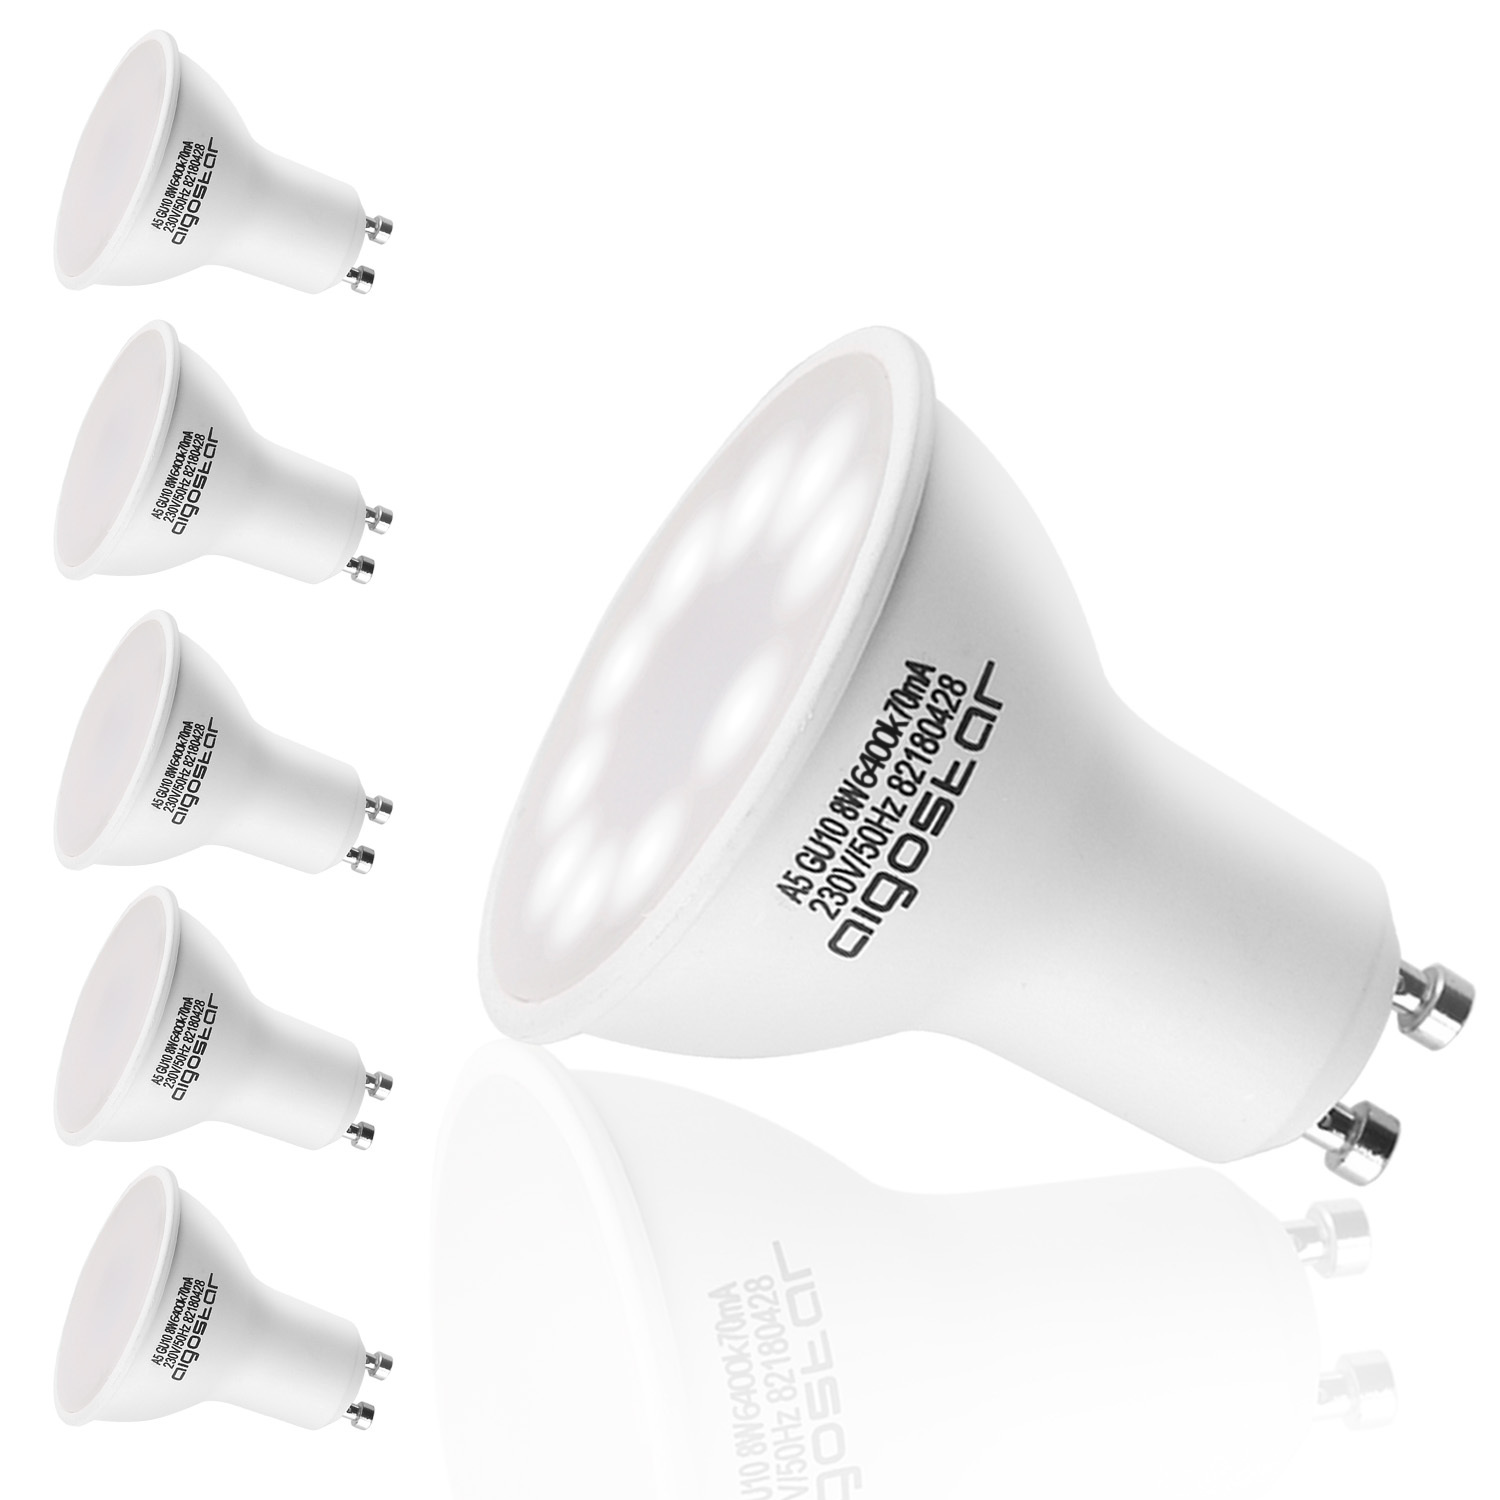 Aigostar -Bombilla LED 8W GU10 ,  Luz blanca fría 6400K, 600lm, 8W Equivalente a 60Watt Lámpara Incandescente,Paquete de 5 Unidades [Clase de eficiencia energética A+]